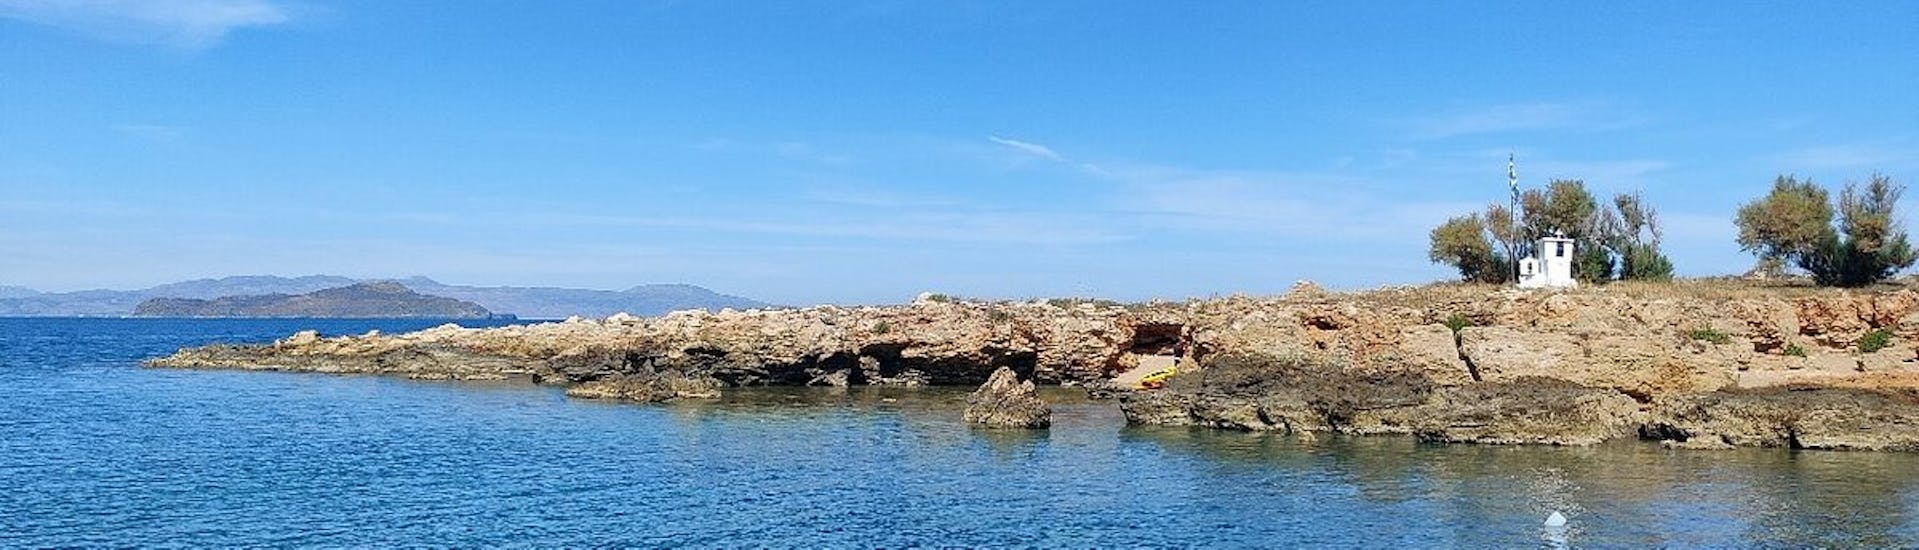 La côte de Lazaretta lors d'une excursion en bateau à fond de verre à Thodorou et Lazaretta.